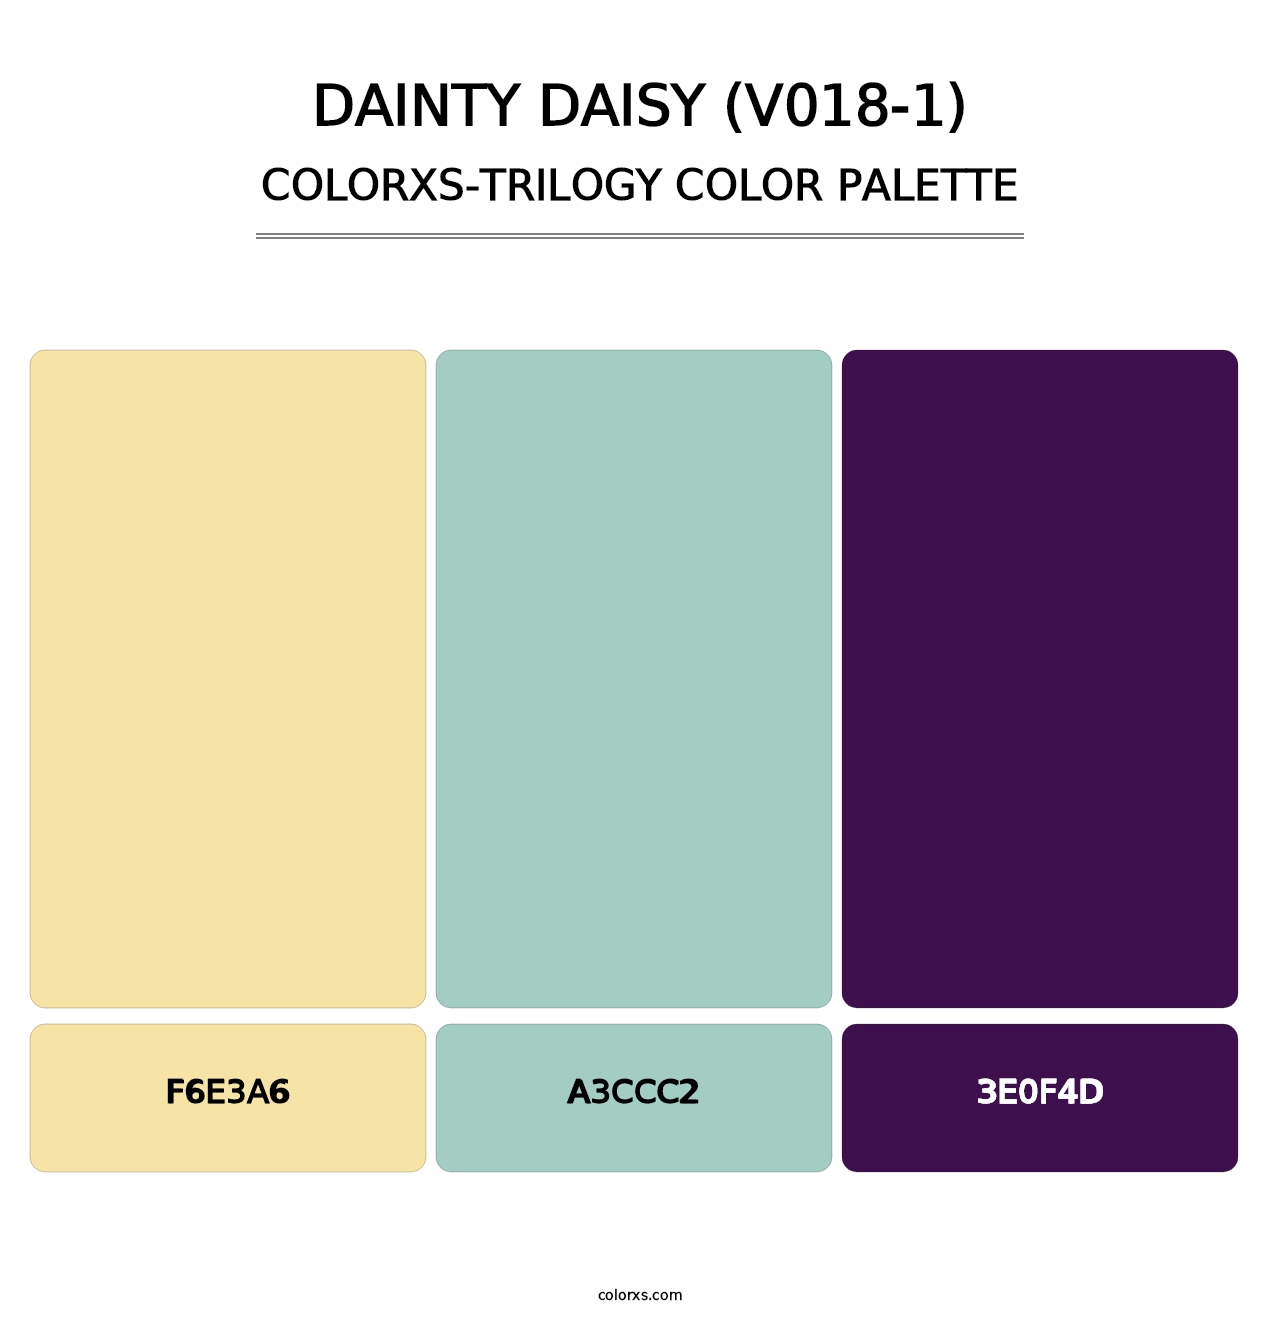 Dainty Daisy (V018-1) - Colorxs Trilogy Palette